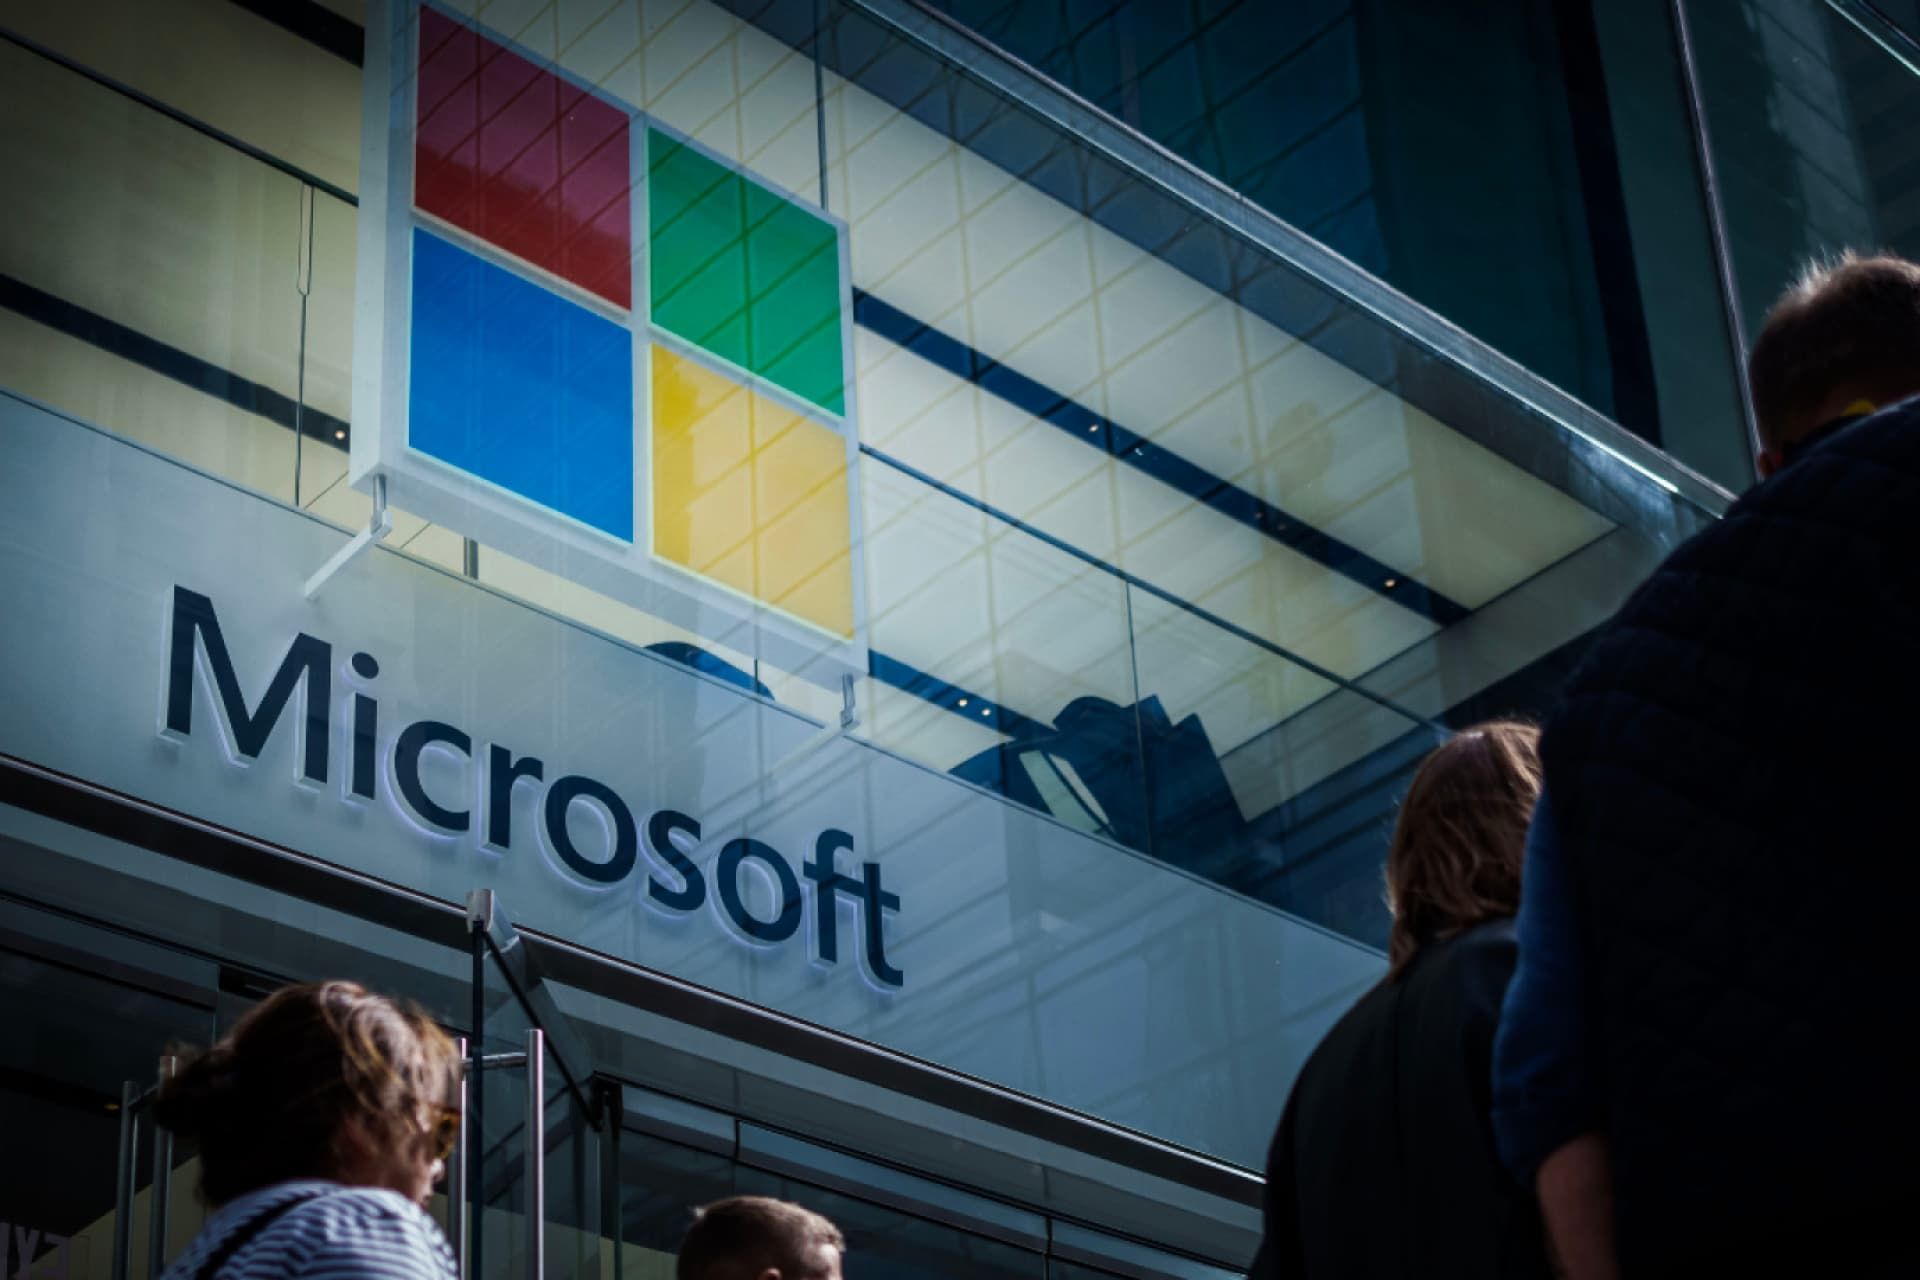 لوگو مایکروسافت / Microsoft روی ساختمان مرکزی شرکت